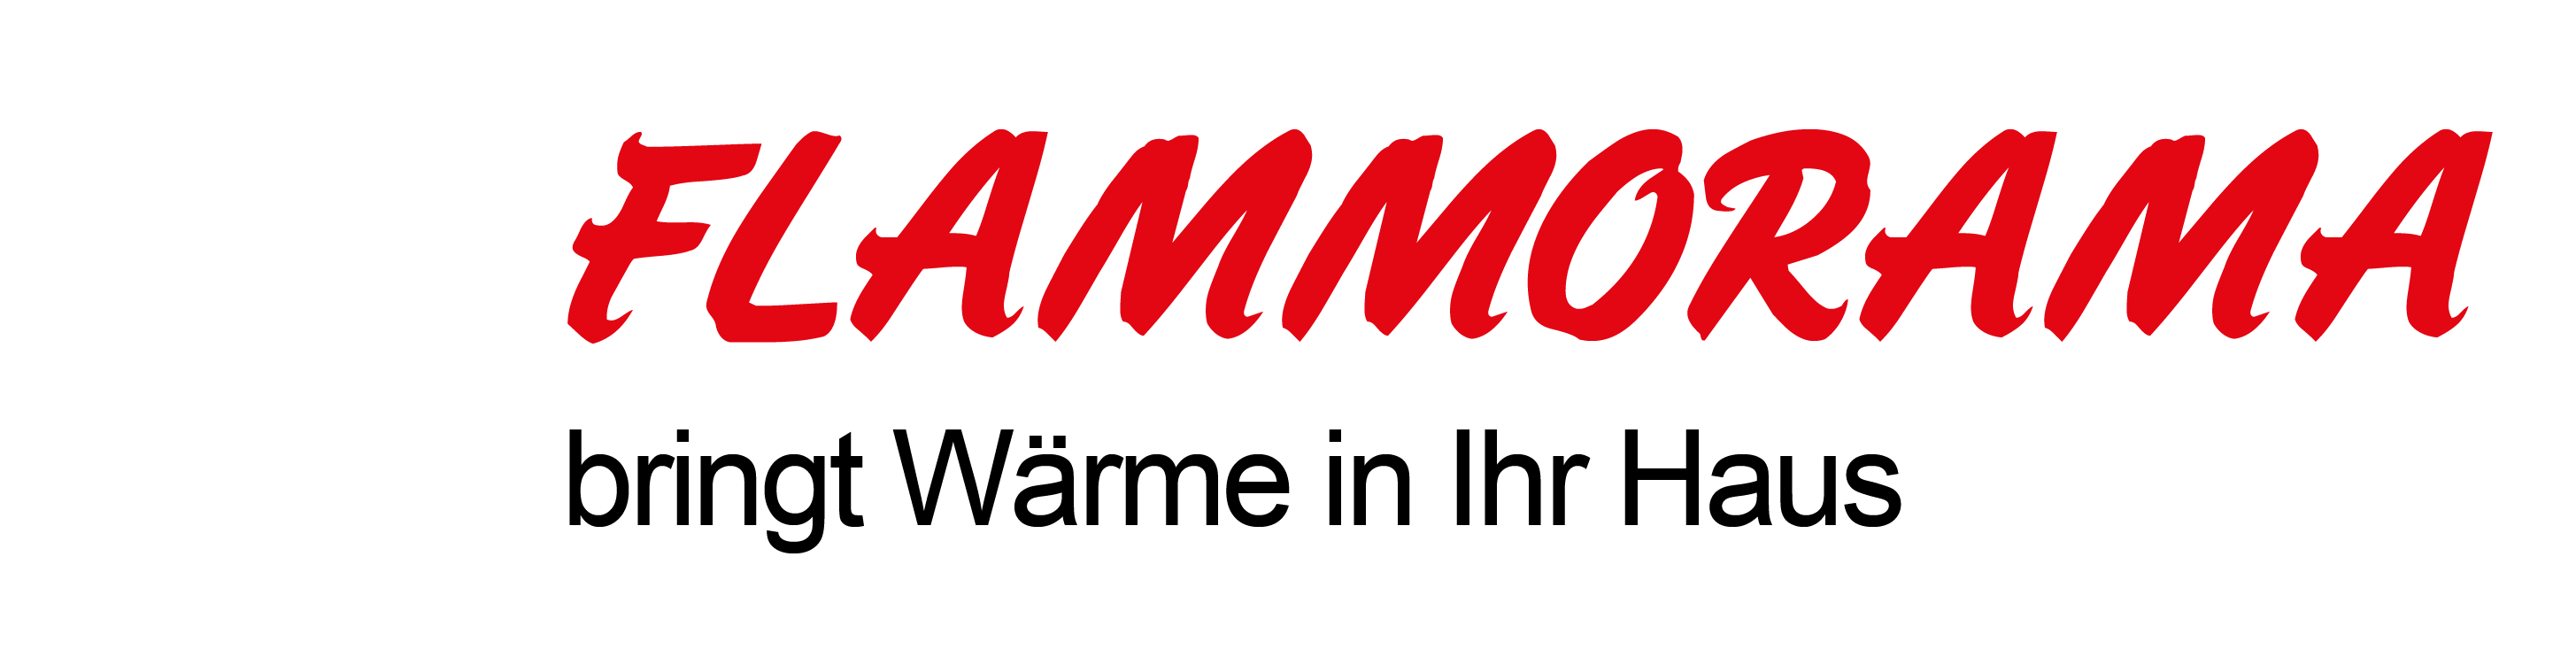 flammorama-logo-Schrift-unten-Schwarz-03.19-mit-Hintergrund